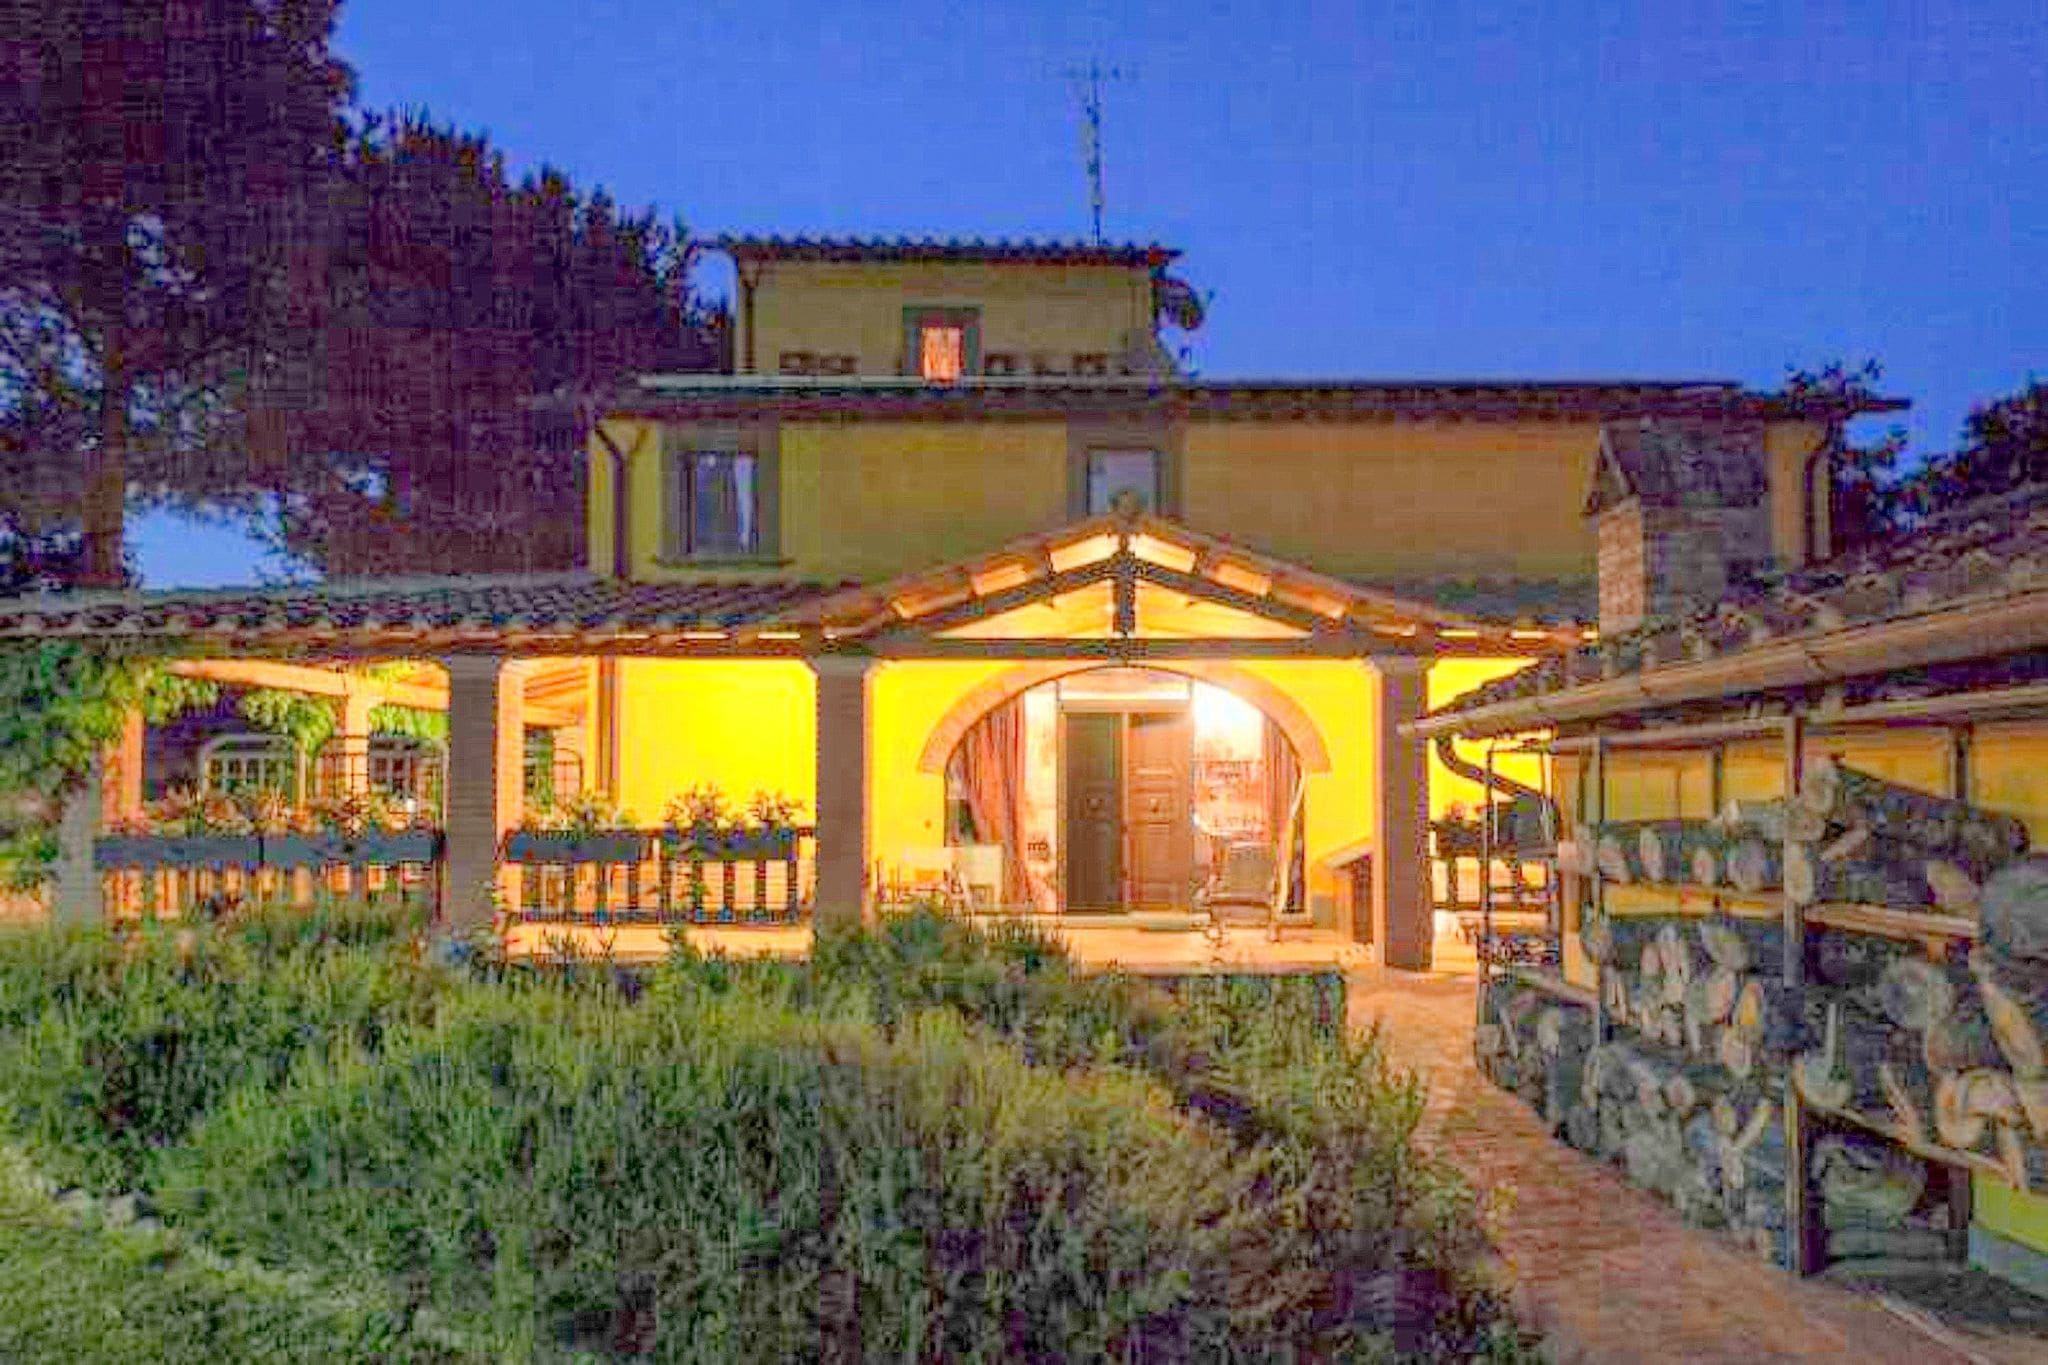 Maison de campagne toscane sur les pentes du mont Pratomagno